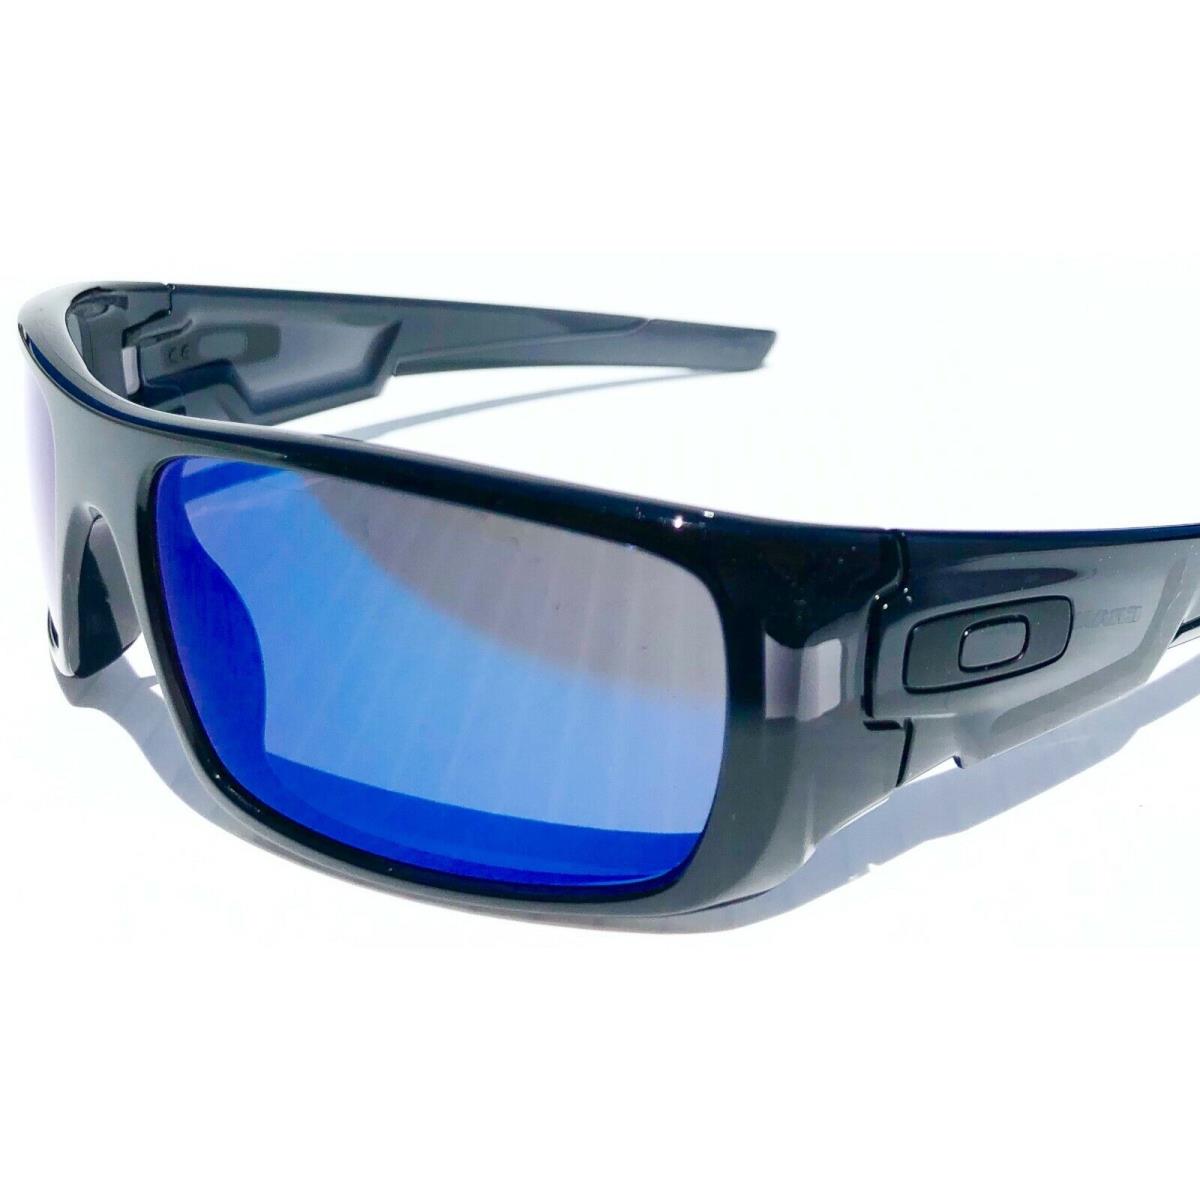 Oakley sunglasses Crankshaft - Black Smoke Crystal Ink Frame, Blue Lens 5